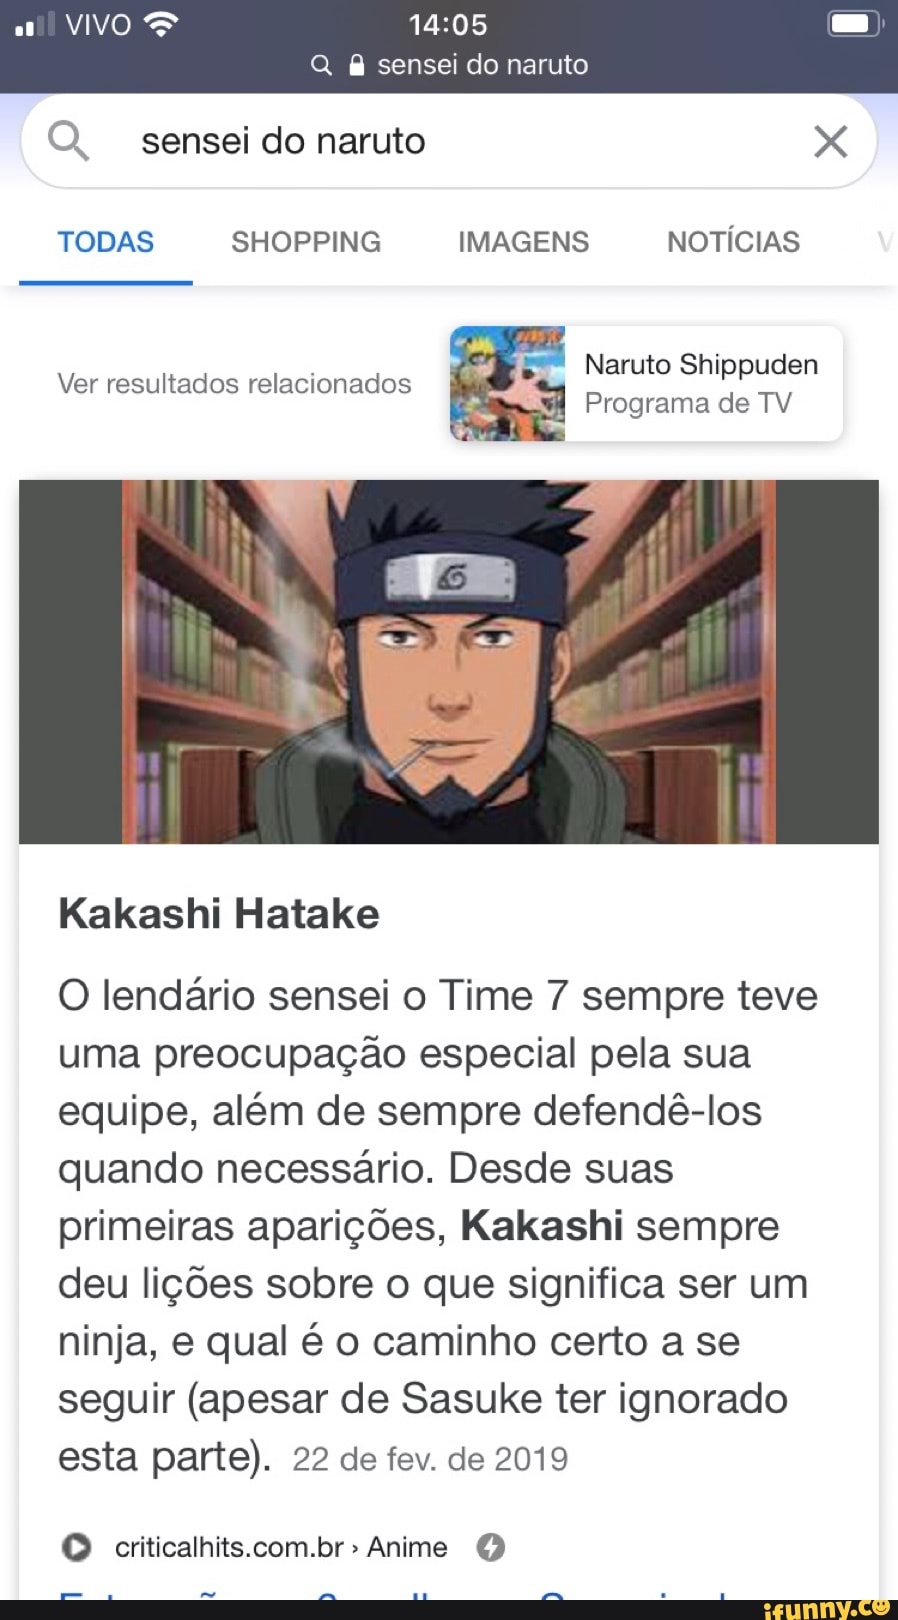 VIVO Q & sensei do naruto OQ. sensei do naruto XXX TODAS SHOPPING IMAGENS  NOTÍCIAS Naruto